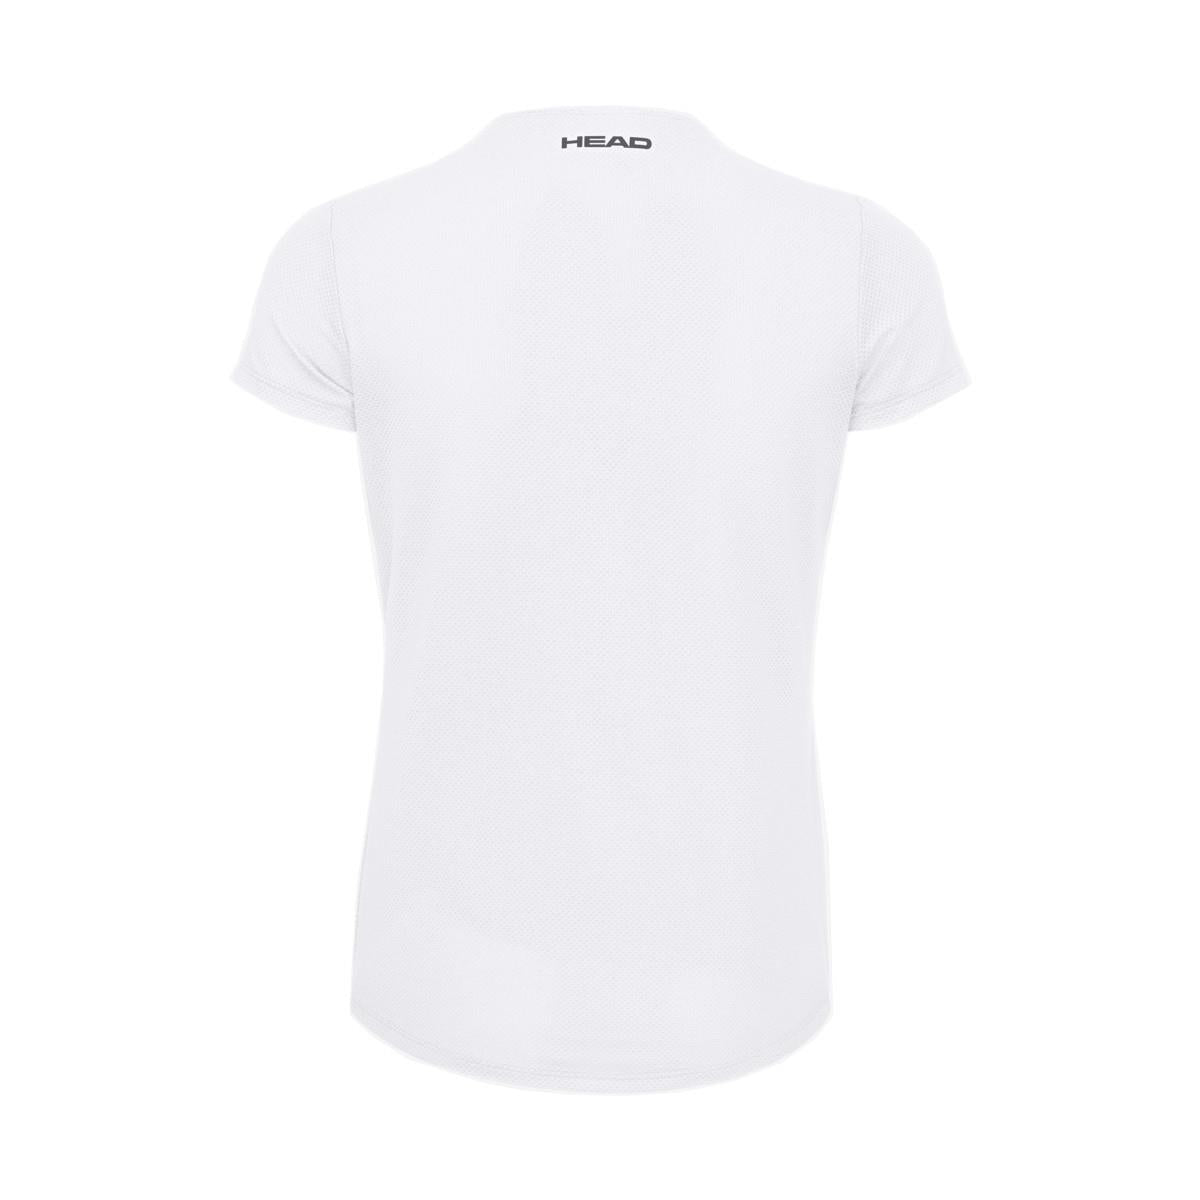 HEAD Womens Tie-Break Badminton T-Shirt - White - Rear